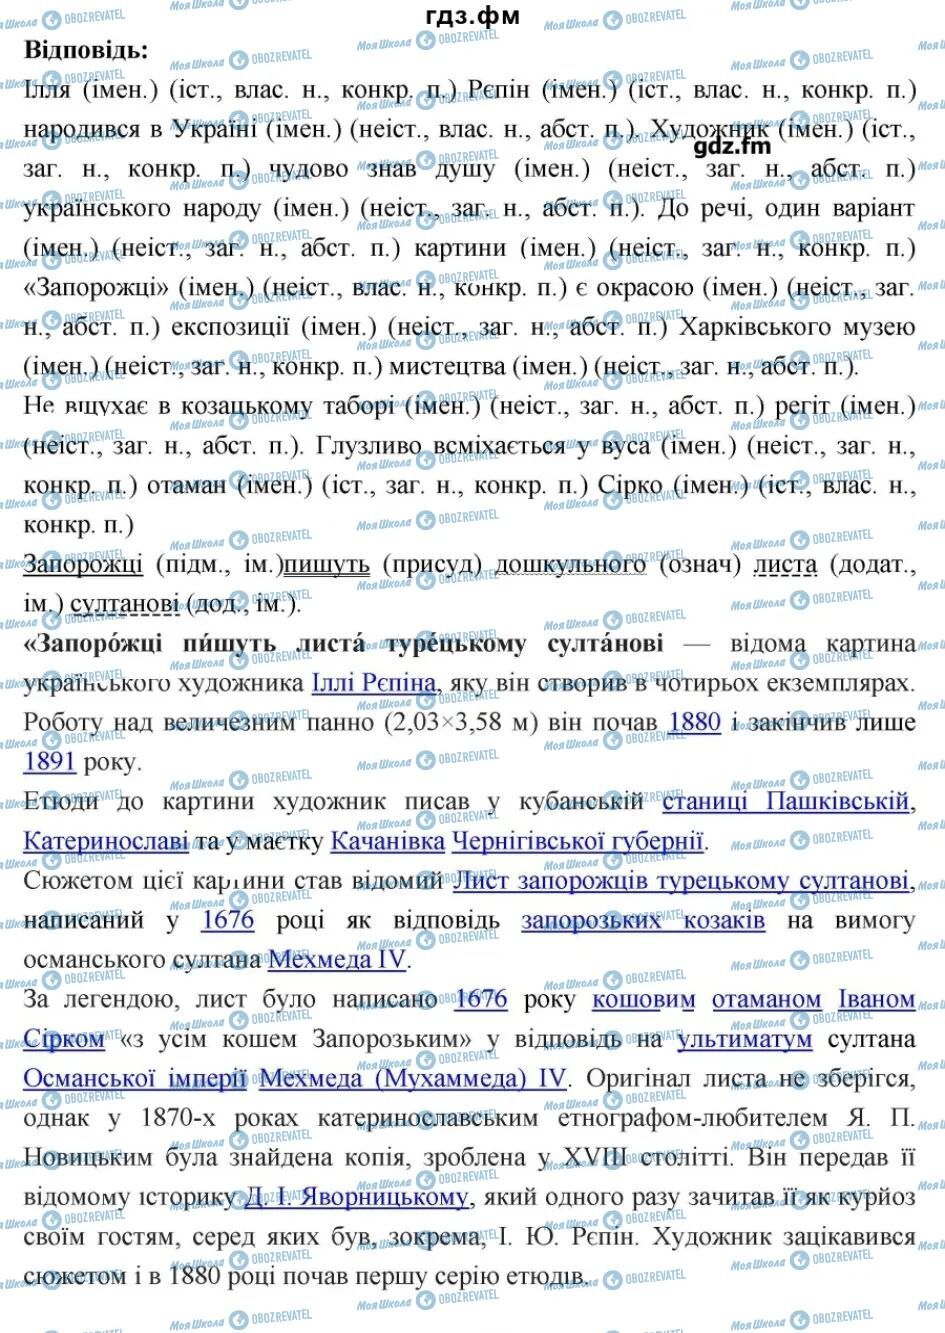 ГДЗ Українська мова 6 клас сторінка 207